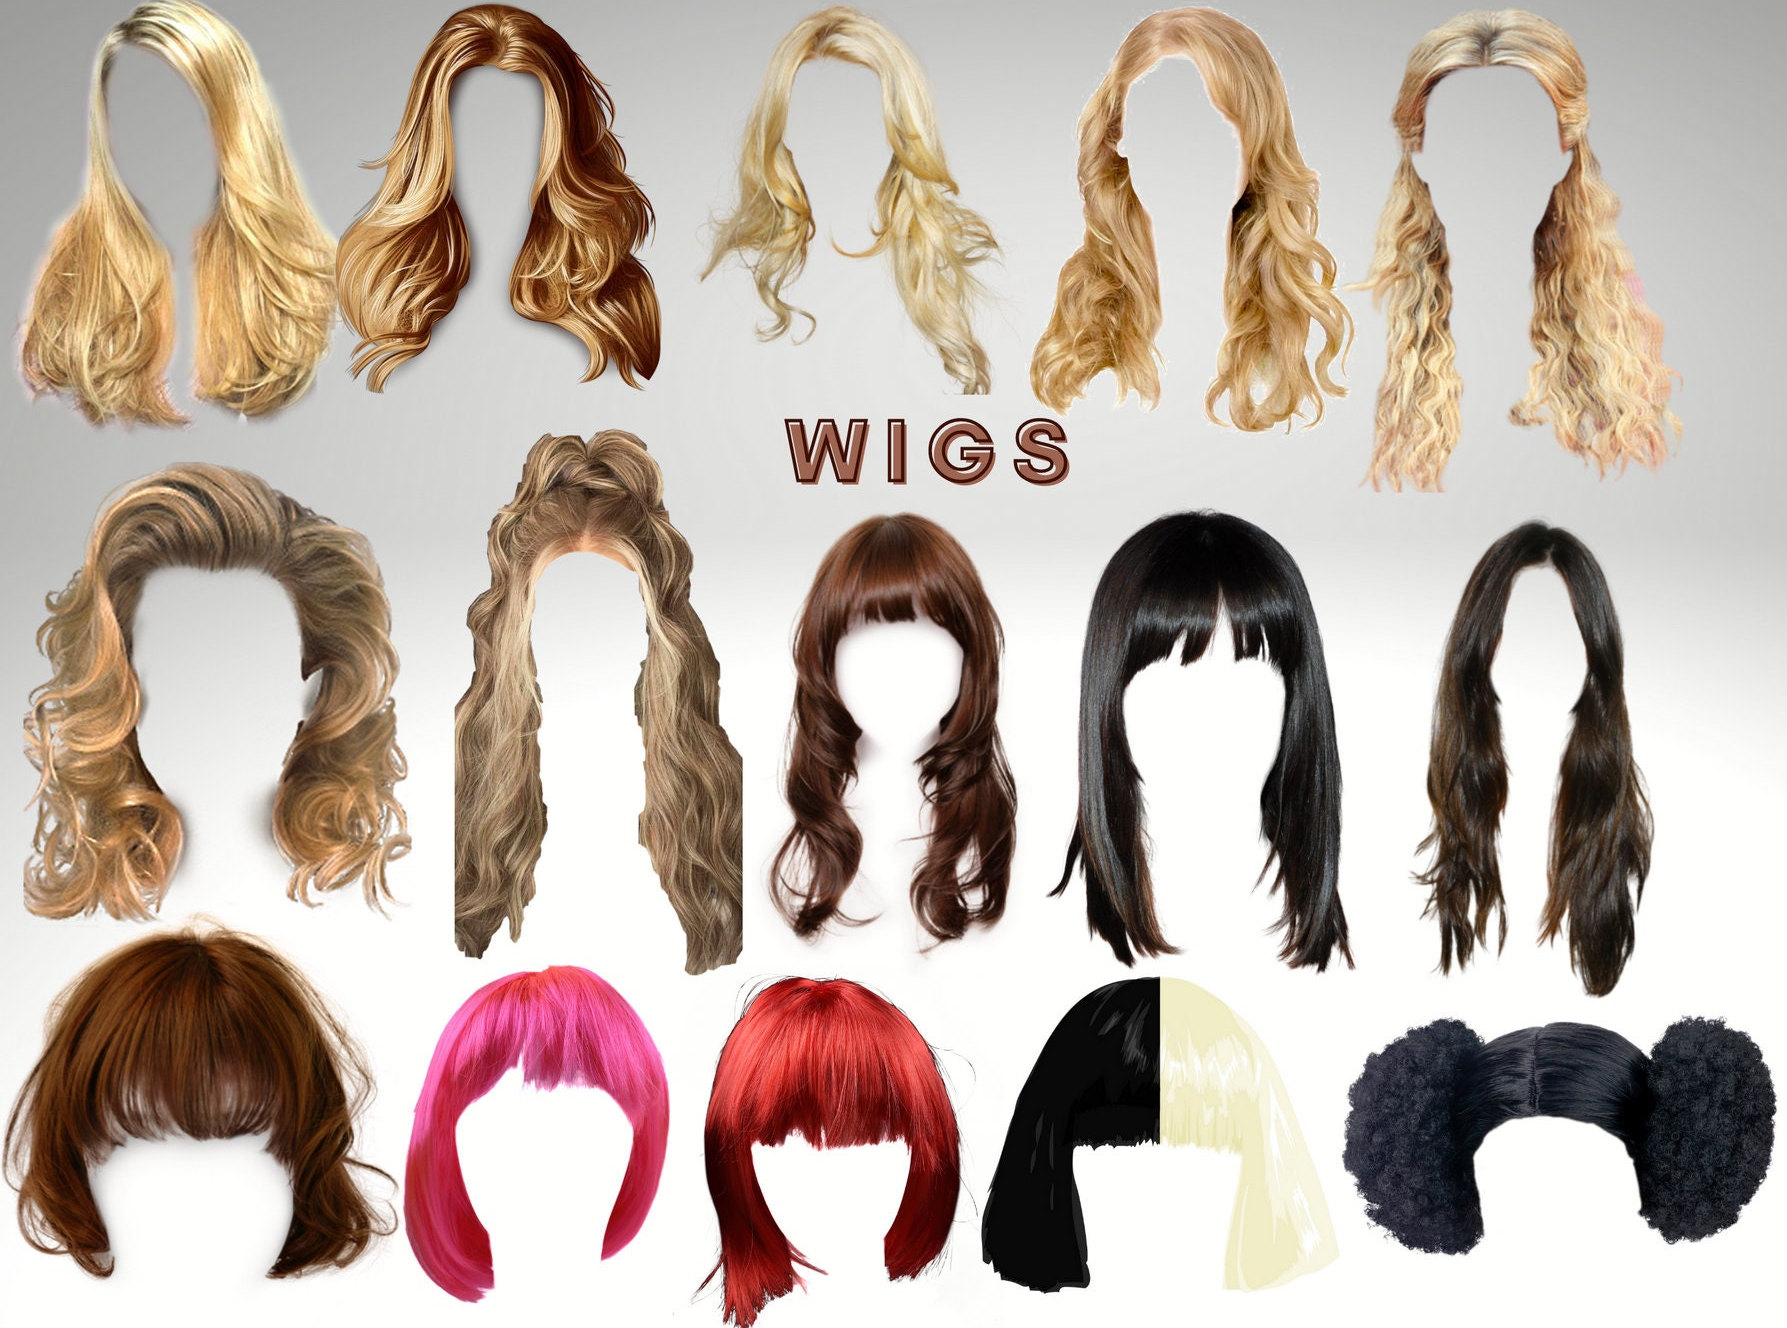 Wig/hair Salon Logo PNG Pack PNG Digital Download - Etsy